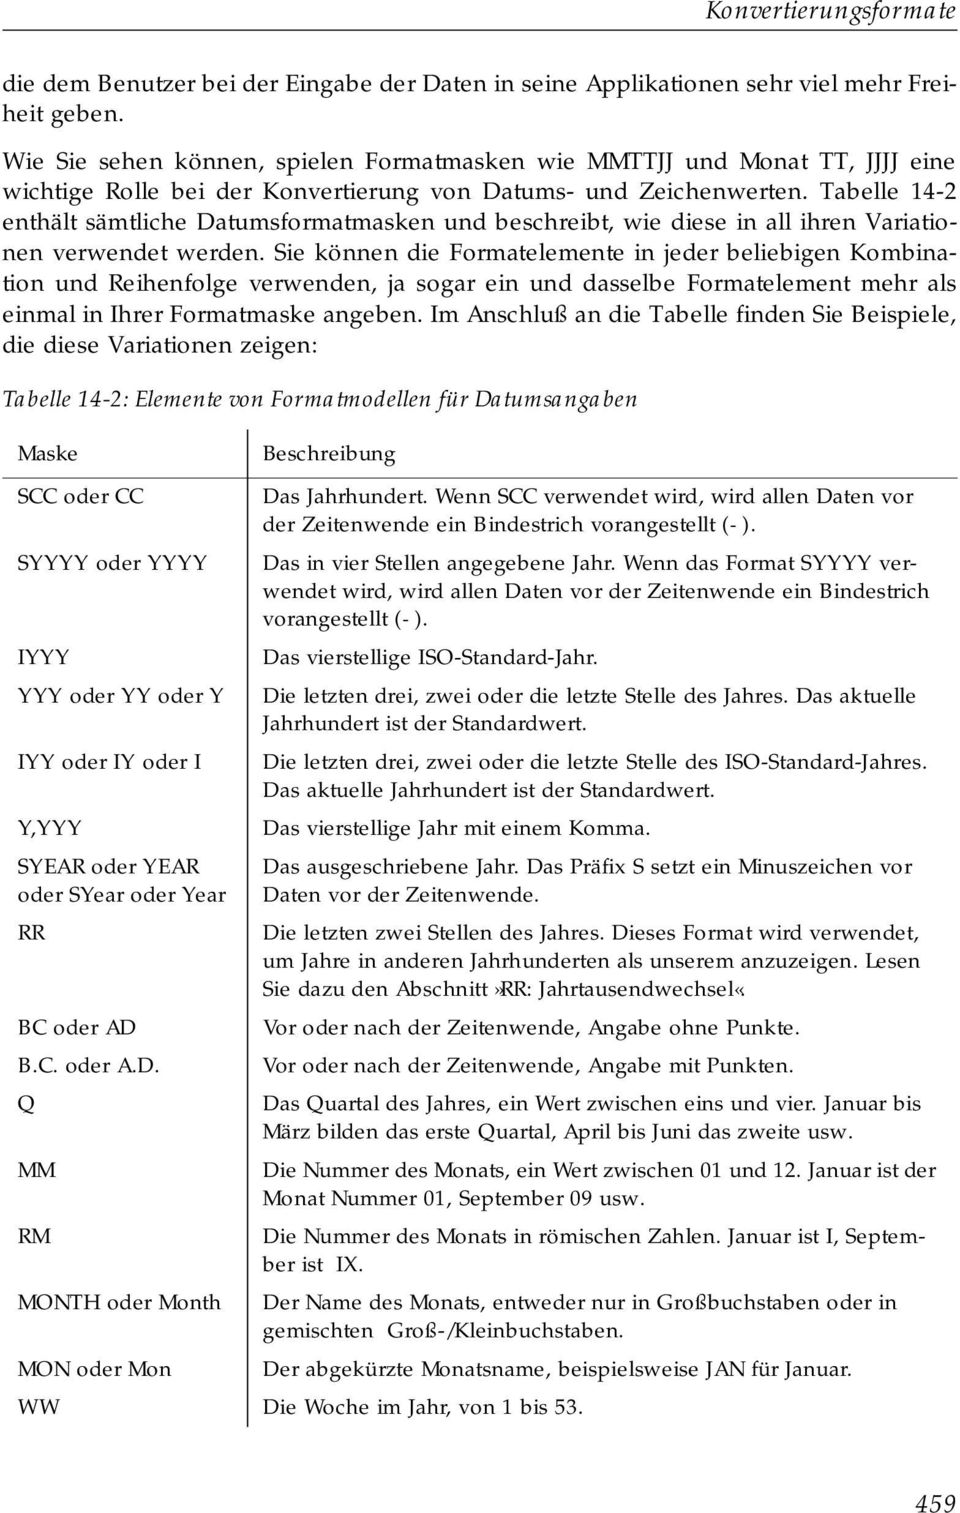 Tabelle 14-2 enthält sämtliche Datumsformatmasken und beschreibt, wie diese in all ihren Variationen verwendet werden.